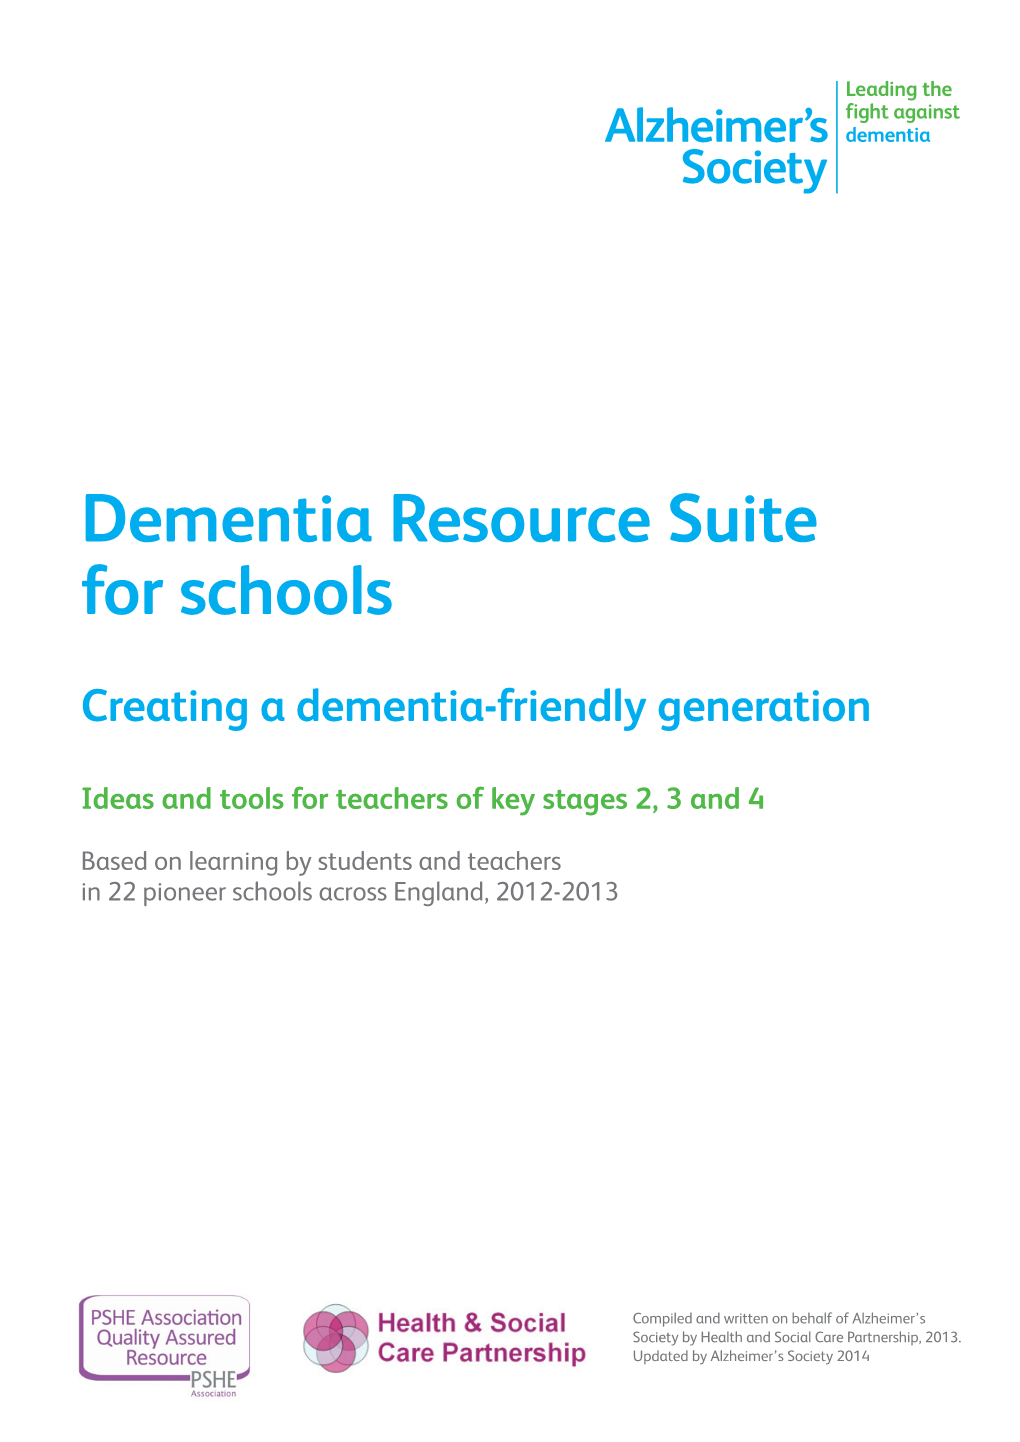 Dementia Resource Suite for Schools